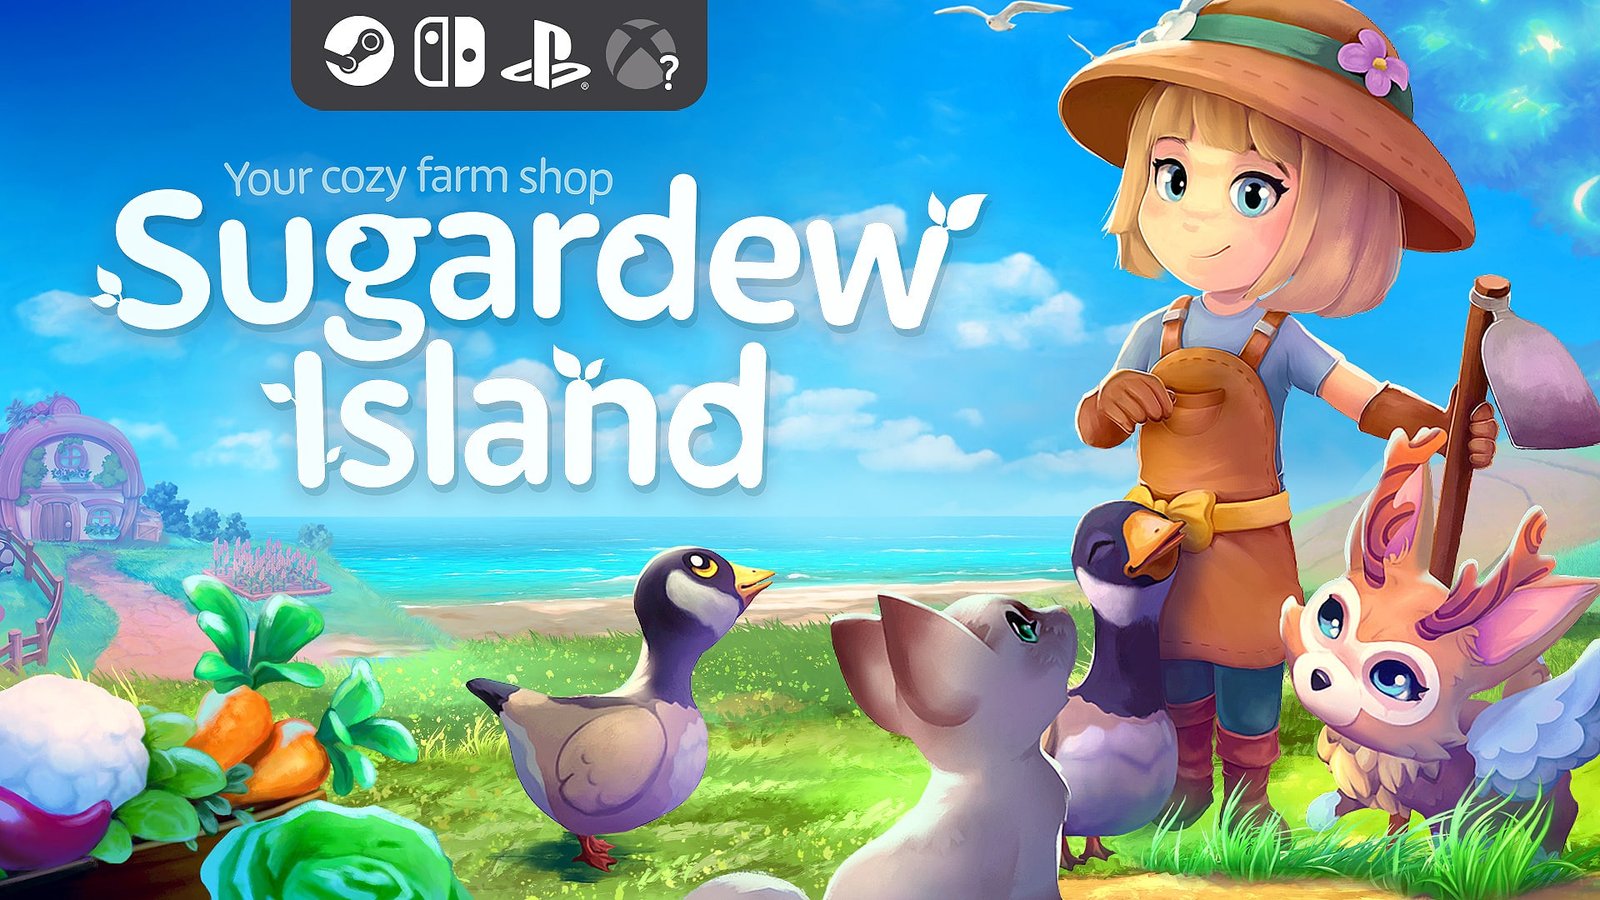 Sugardew Island – Your Cozy Farm Shop : gérez votre propre magasin à la ferme, le jeu dévoile son premier trailer de gameplay et lance sa campagne Kickstarter